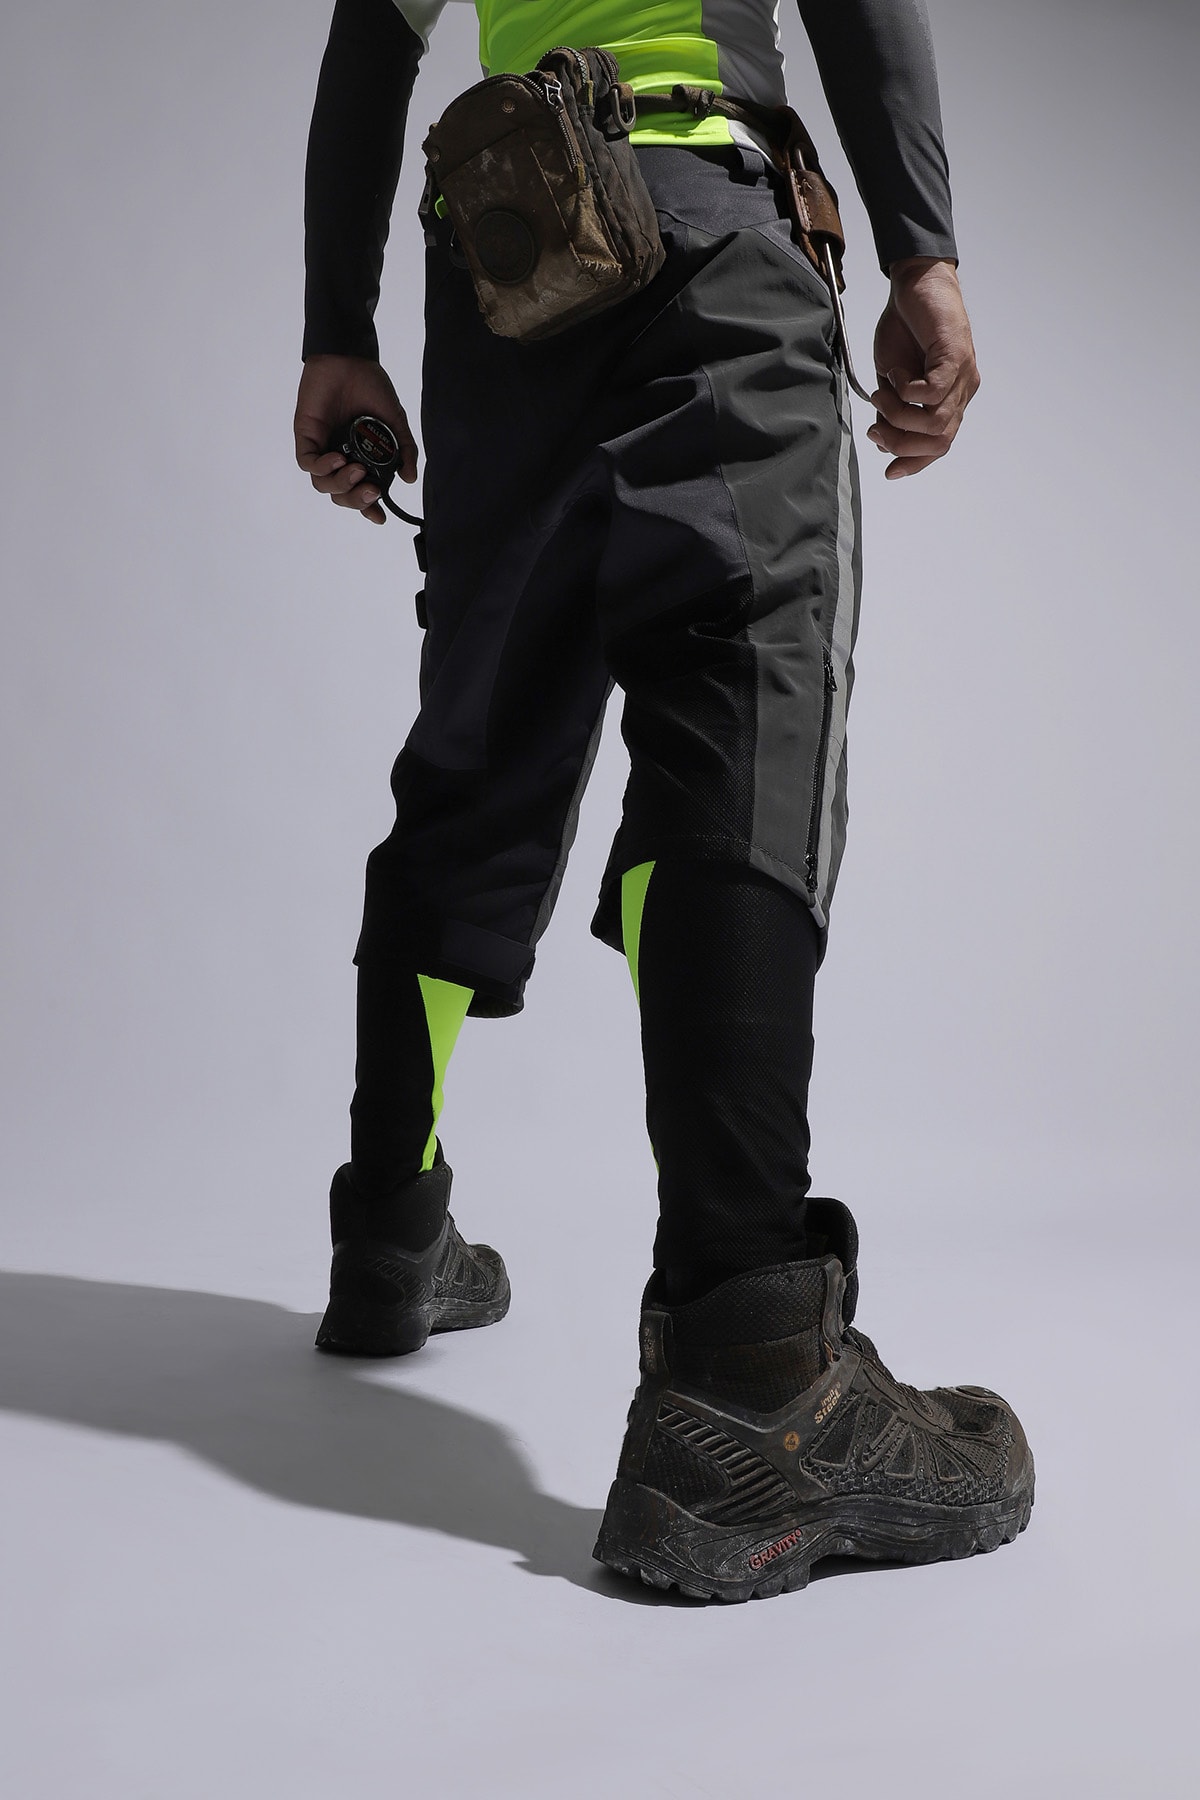 香港品牌 TMS.SITE 正式發佈全新「3.0 工業機能運動褲」系列